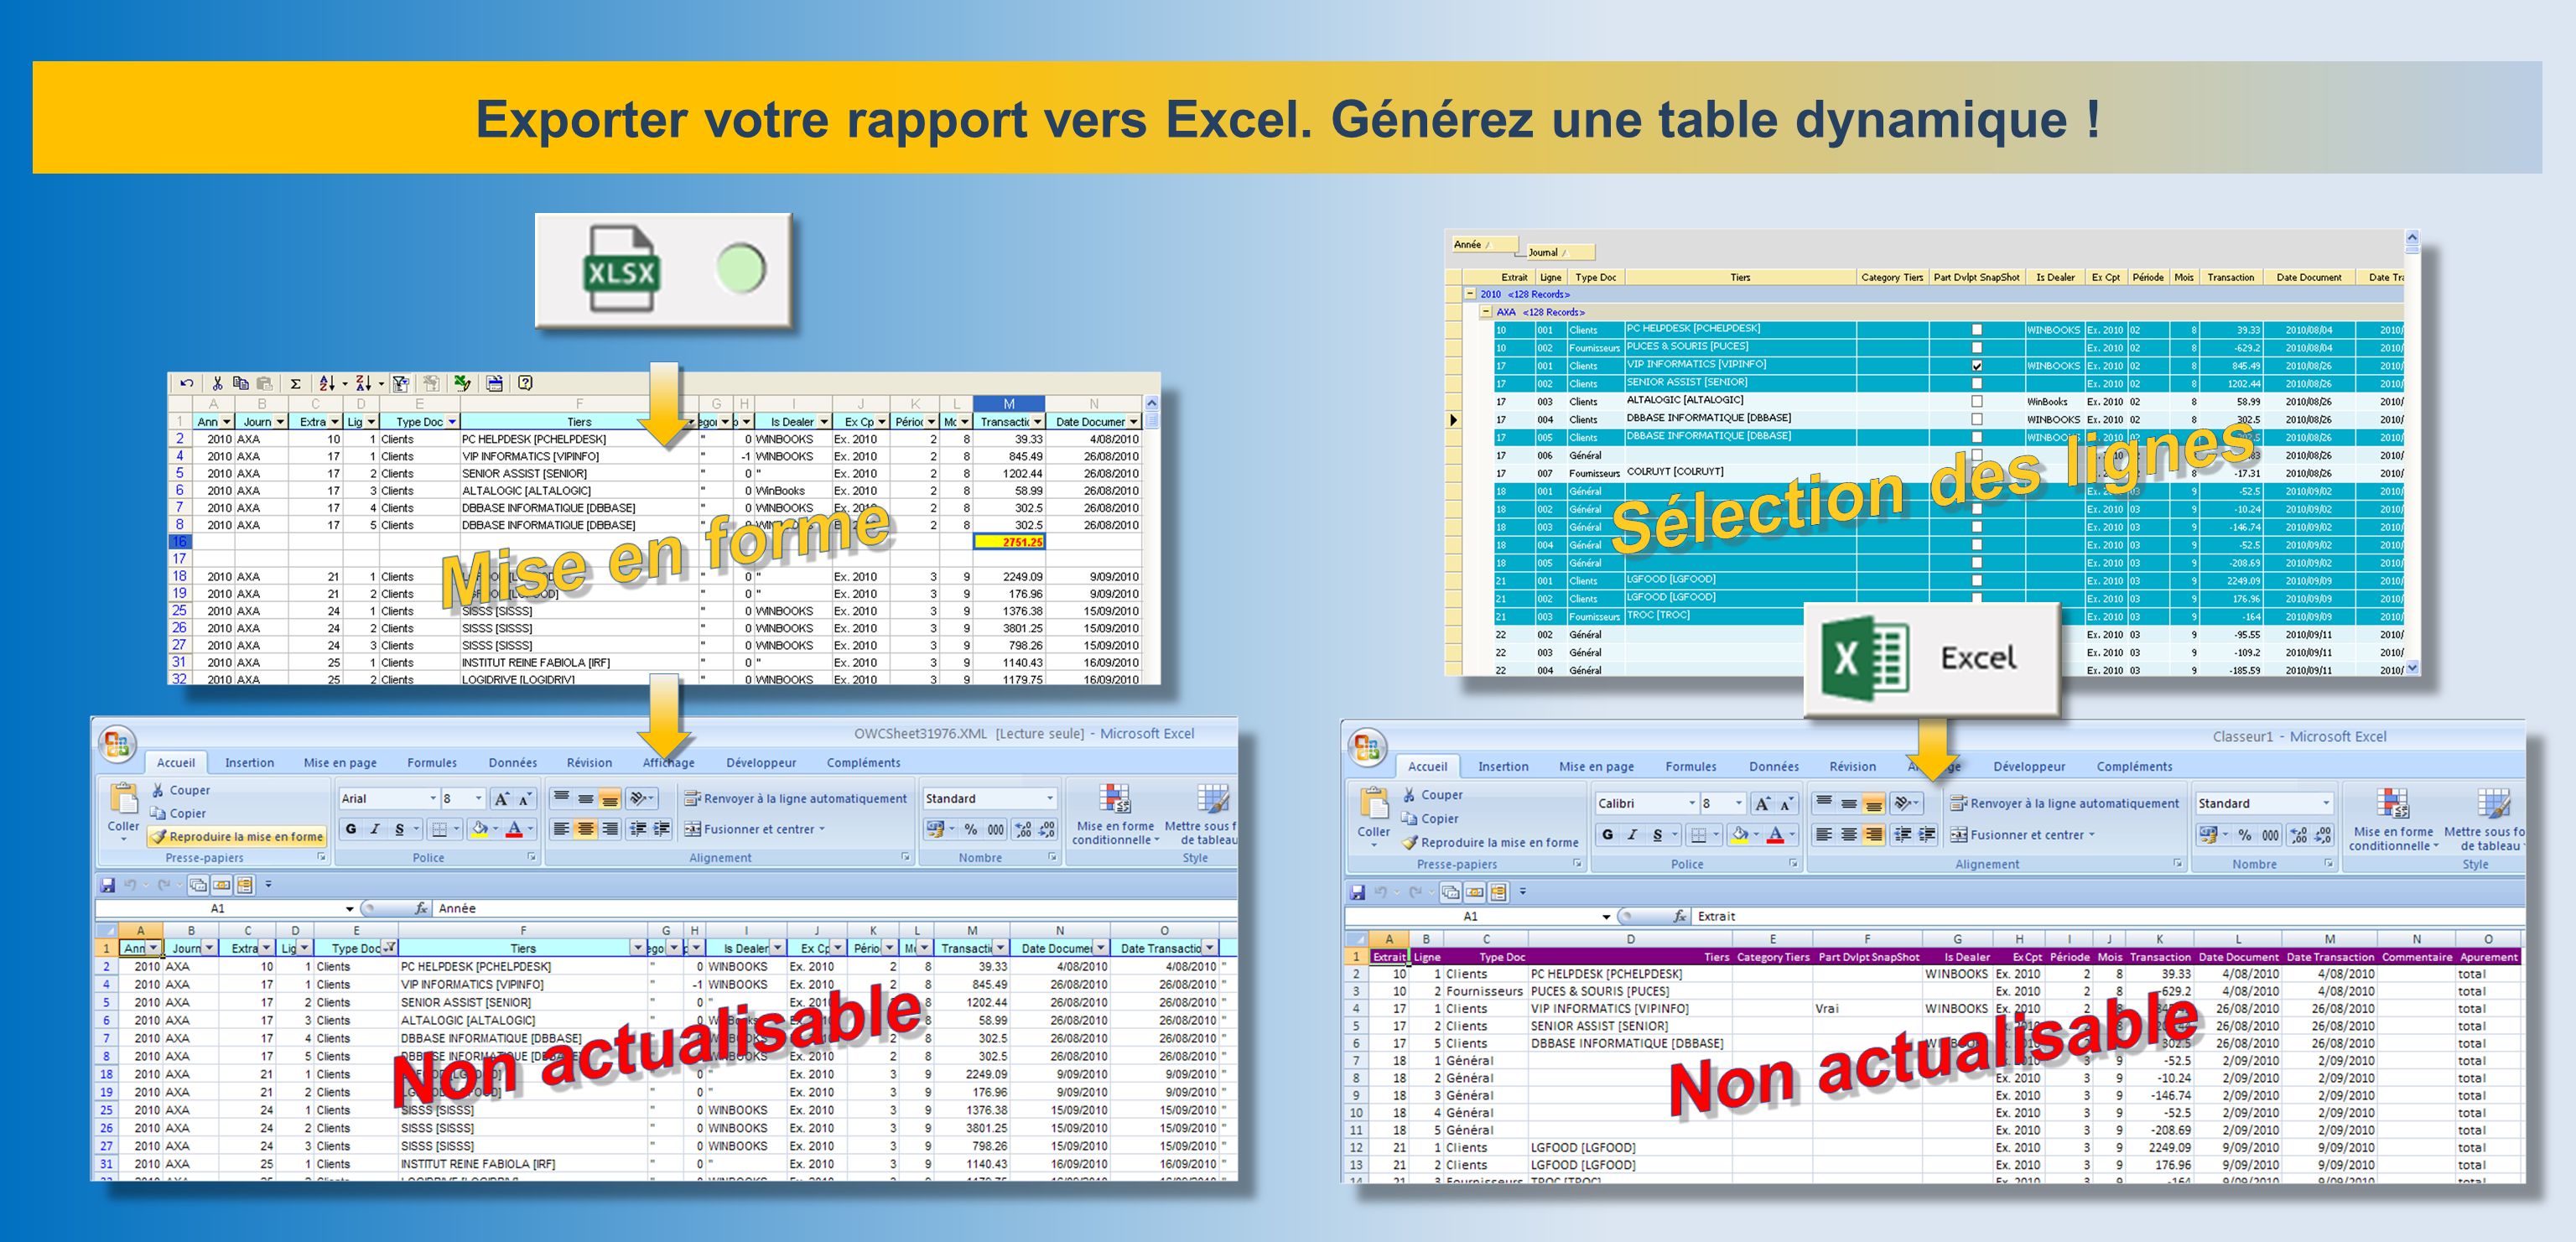 Exporter votre rapport vers Excel. Générez une table dynamique !